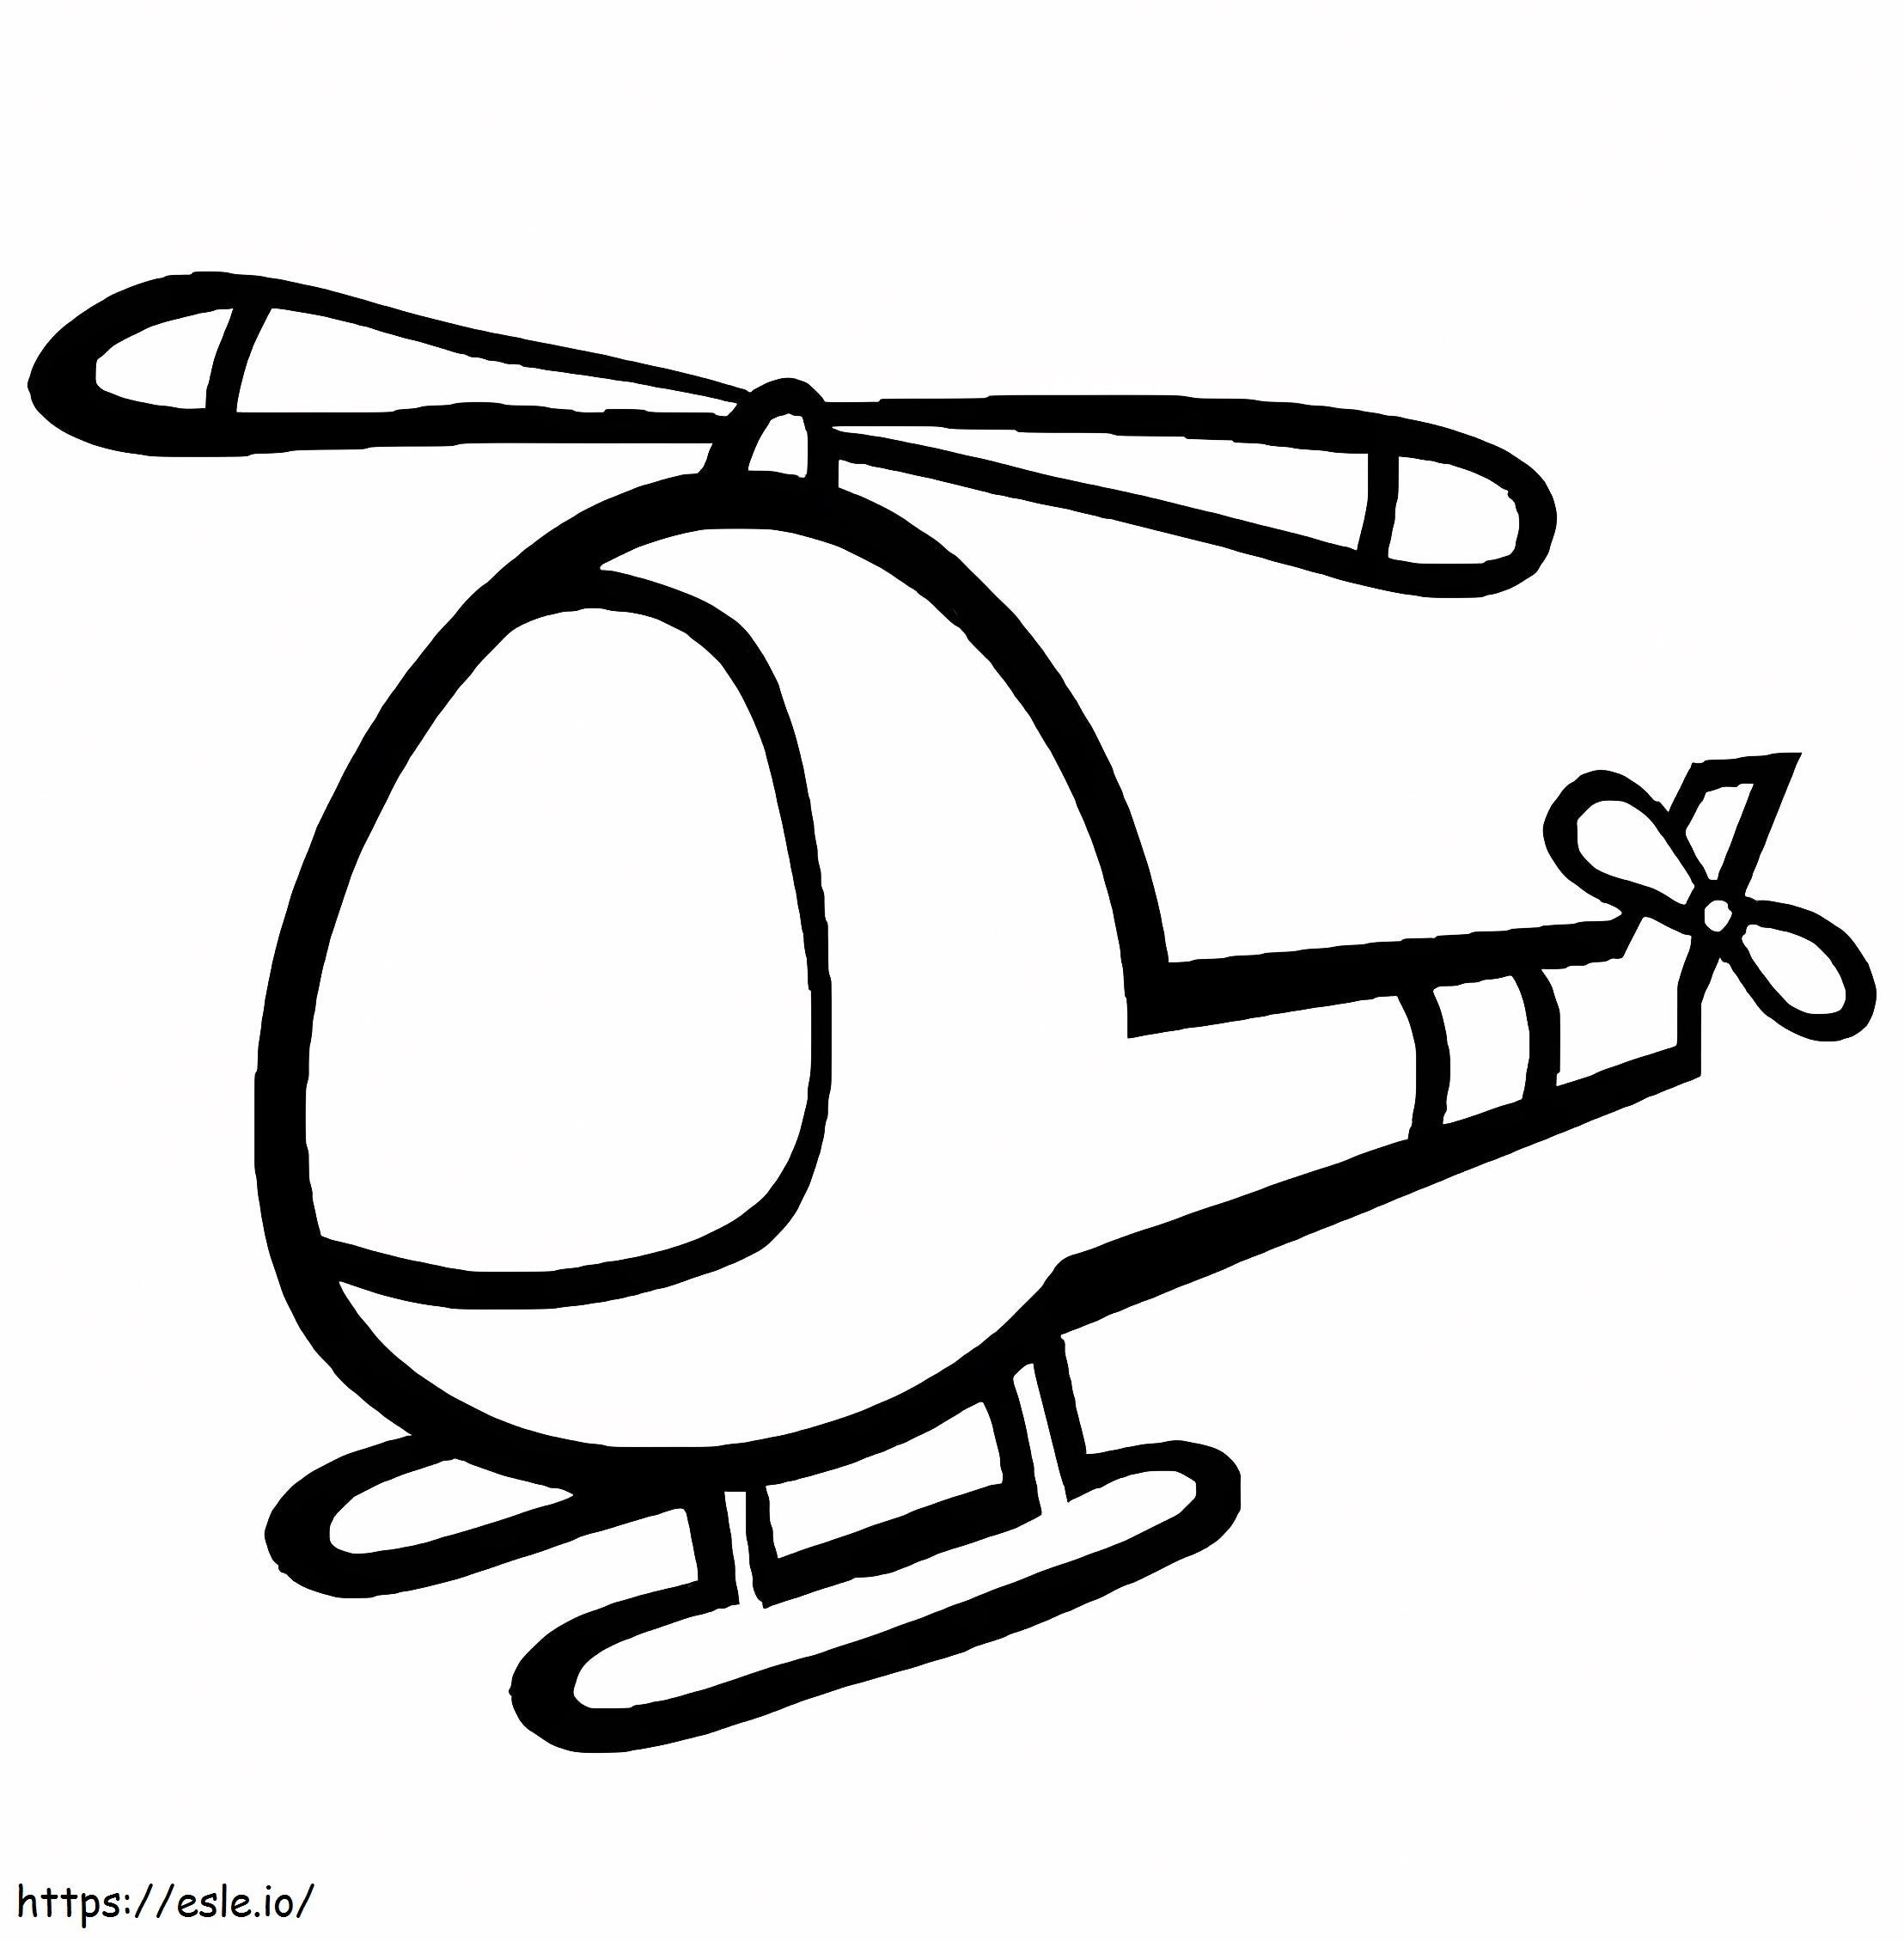 dibujo de helicóptero para colorear